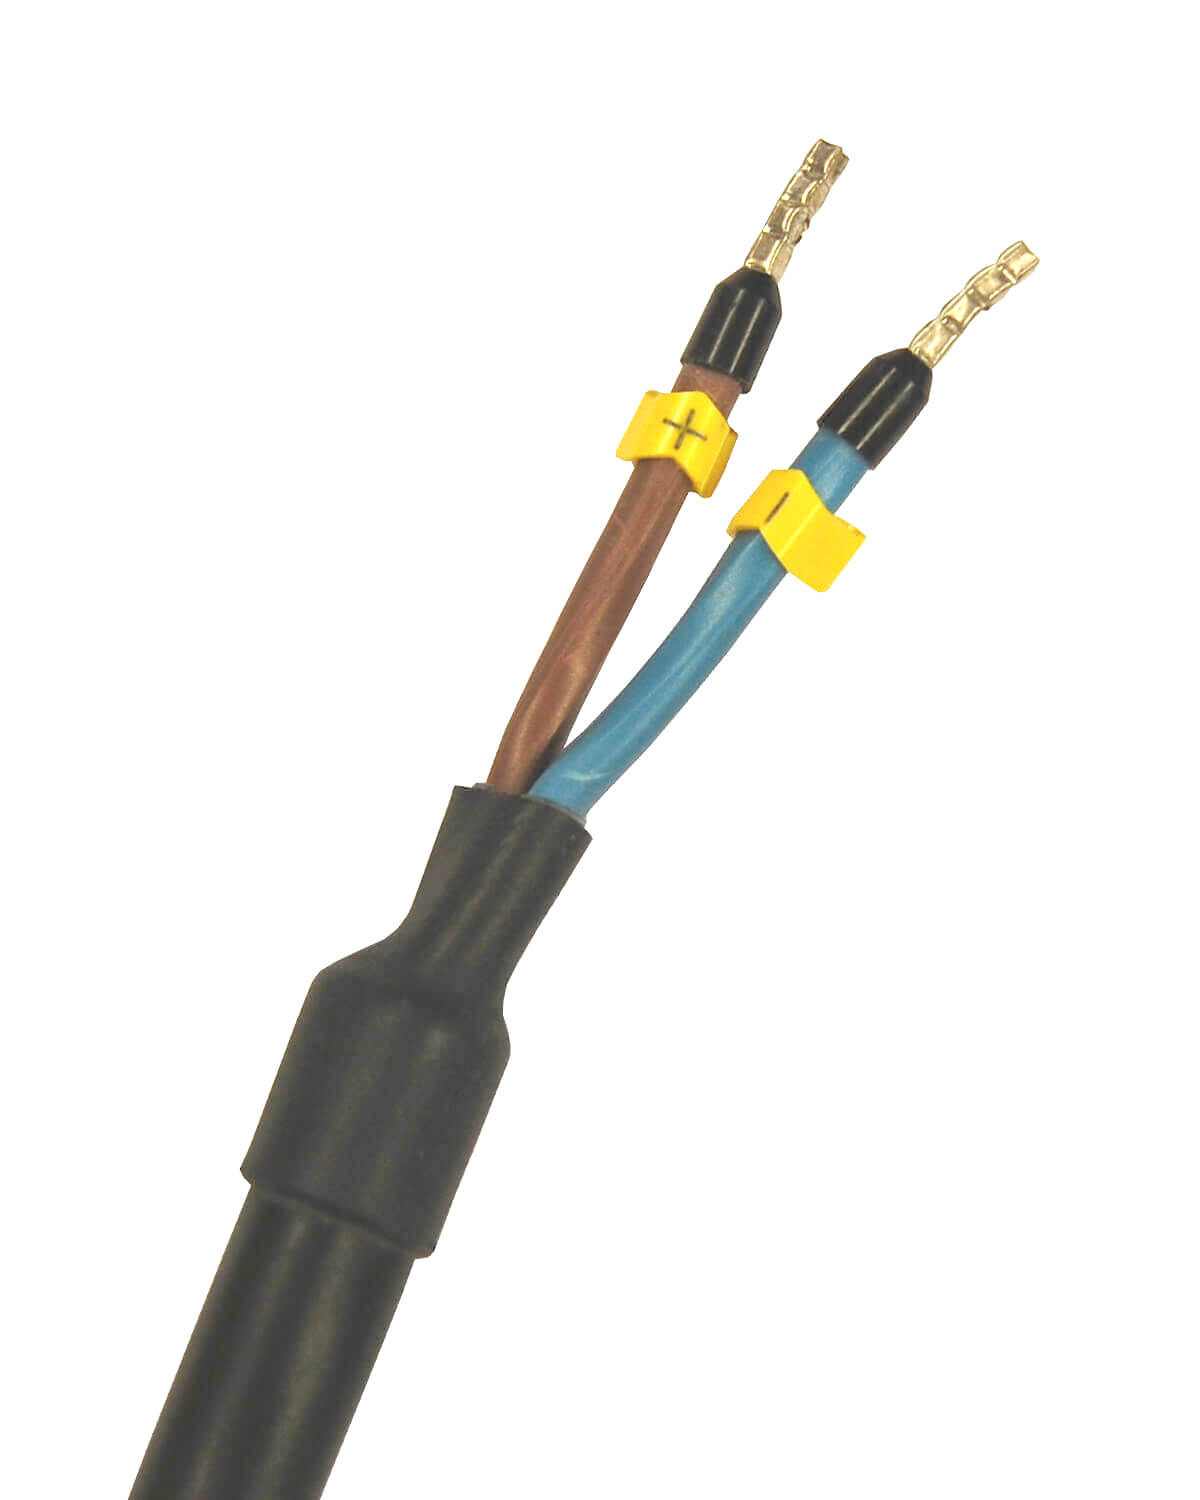 Ein schwarz-gelbes PURION 1000 12/24 V DC Basic-Kabel mit zwei Adern, konzipiert für die Desinfektion von Wasser, hergestellt von der PURION GmbH.